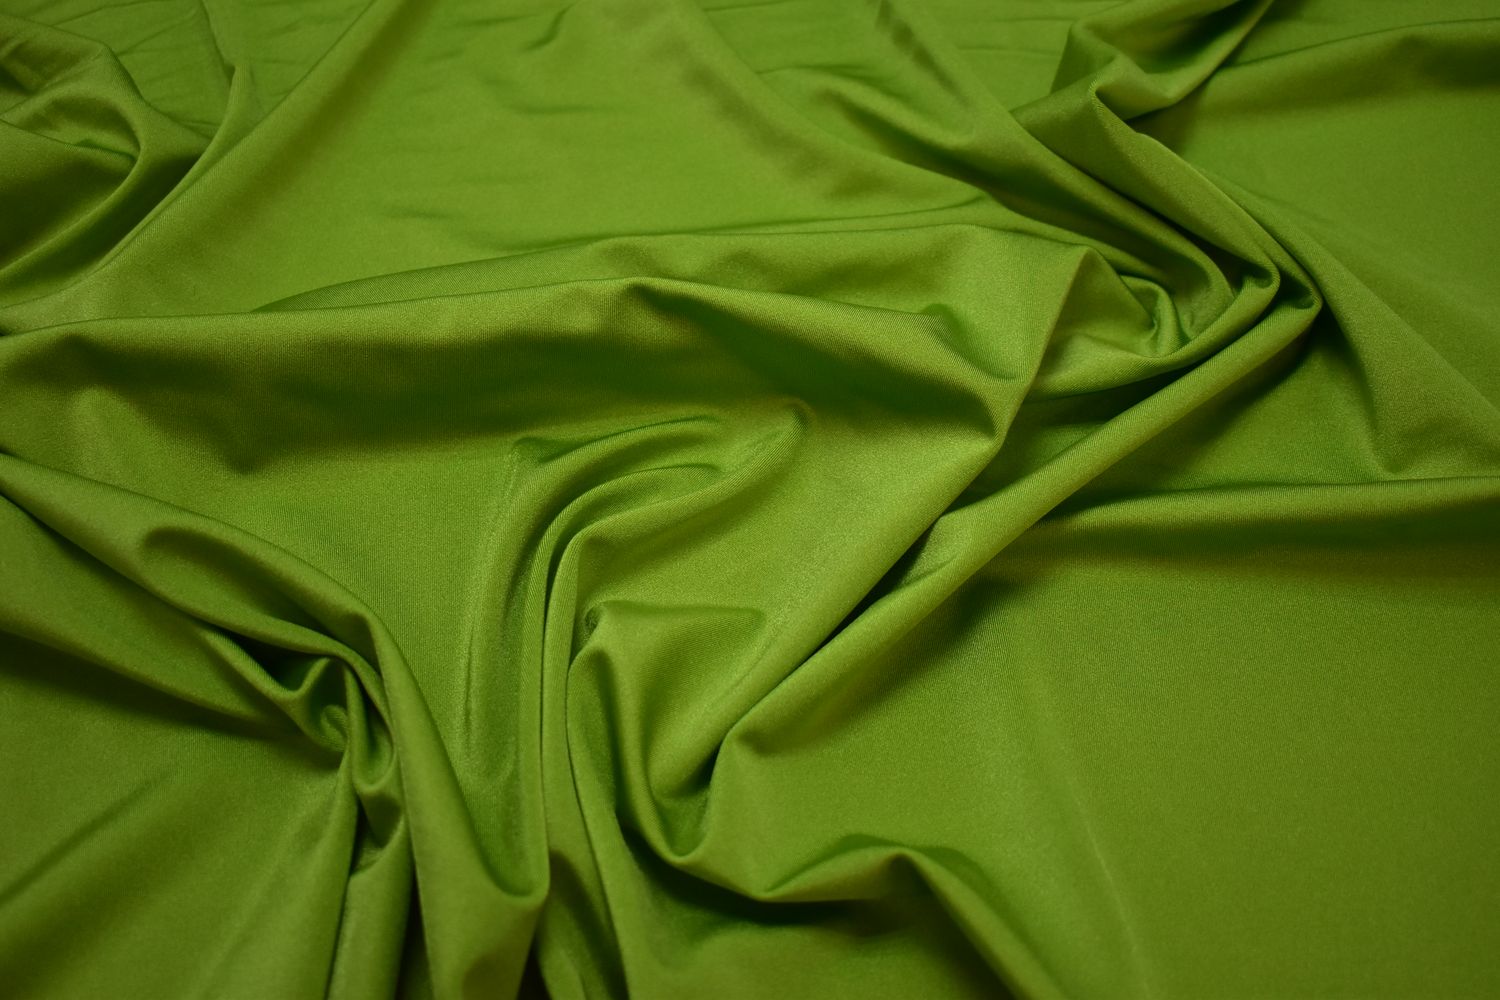 Бифлекс блестящий зеленого цвета W-132415